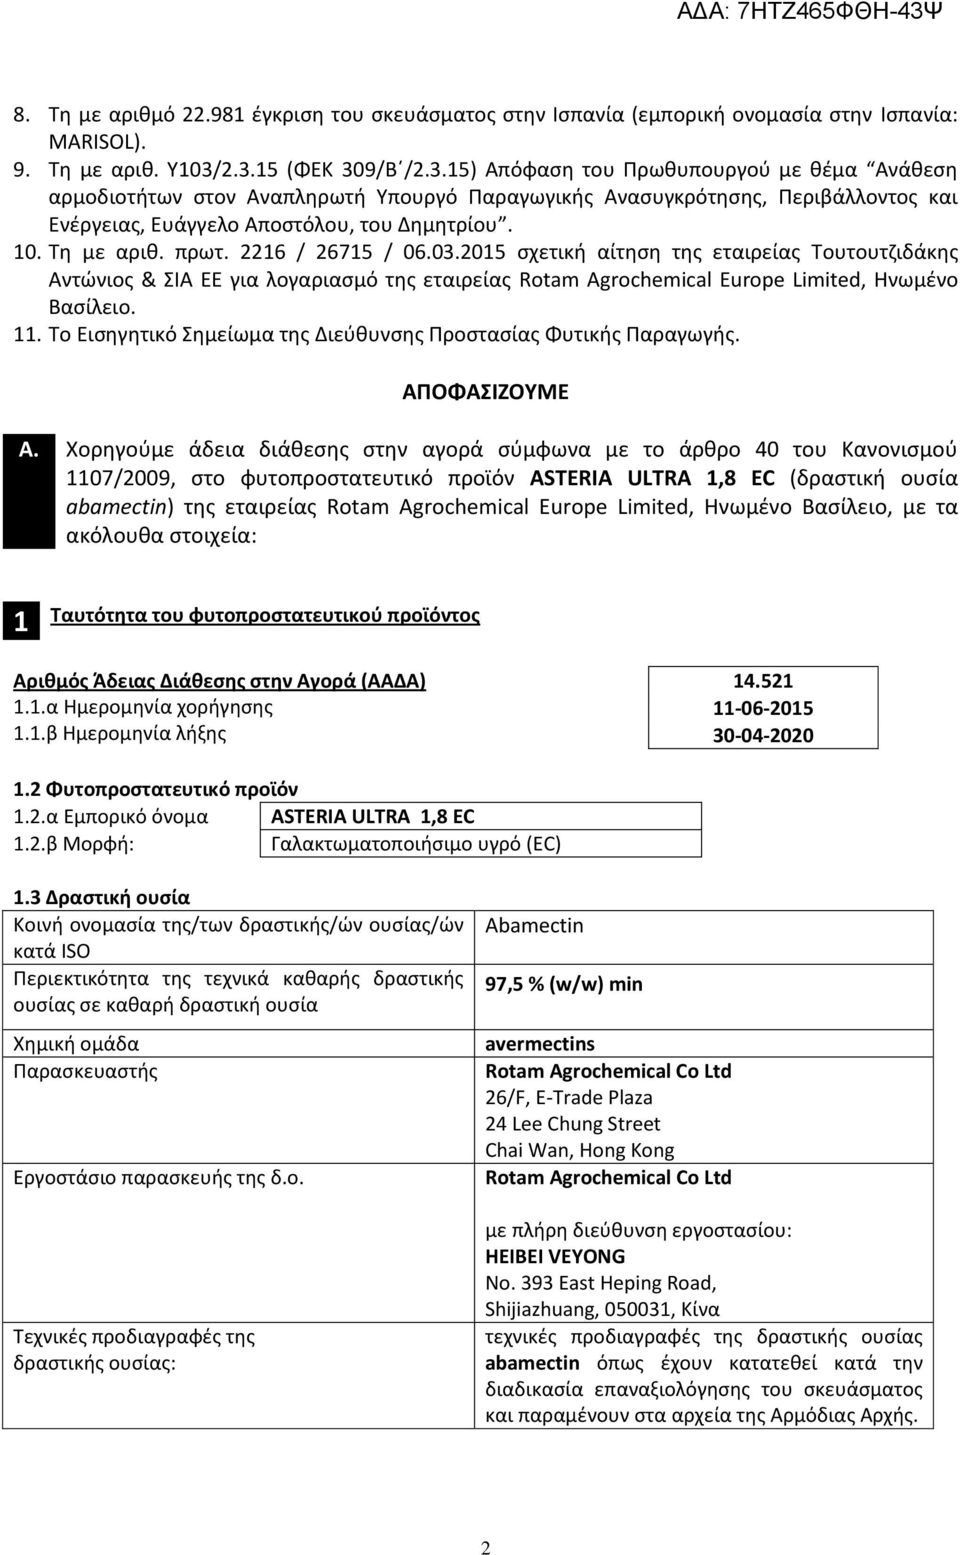 Τη με αριθ. πρωτ. 2216 / 26715 / 06.03.2015 σχετική αίτηση της εταιρείας Τουτουτζιδάκης Αντώνιος & ΣΙΑ ΕΕ για λογαριασμό της εταιρείας Rotam Agrochemical Europe Limited, Ηνωμένο Βασίλειο. 11.